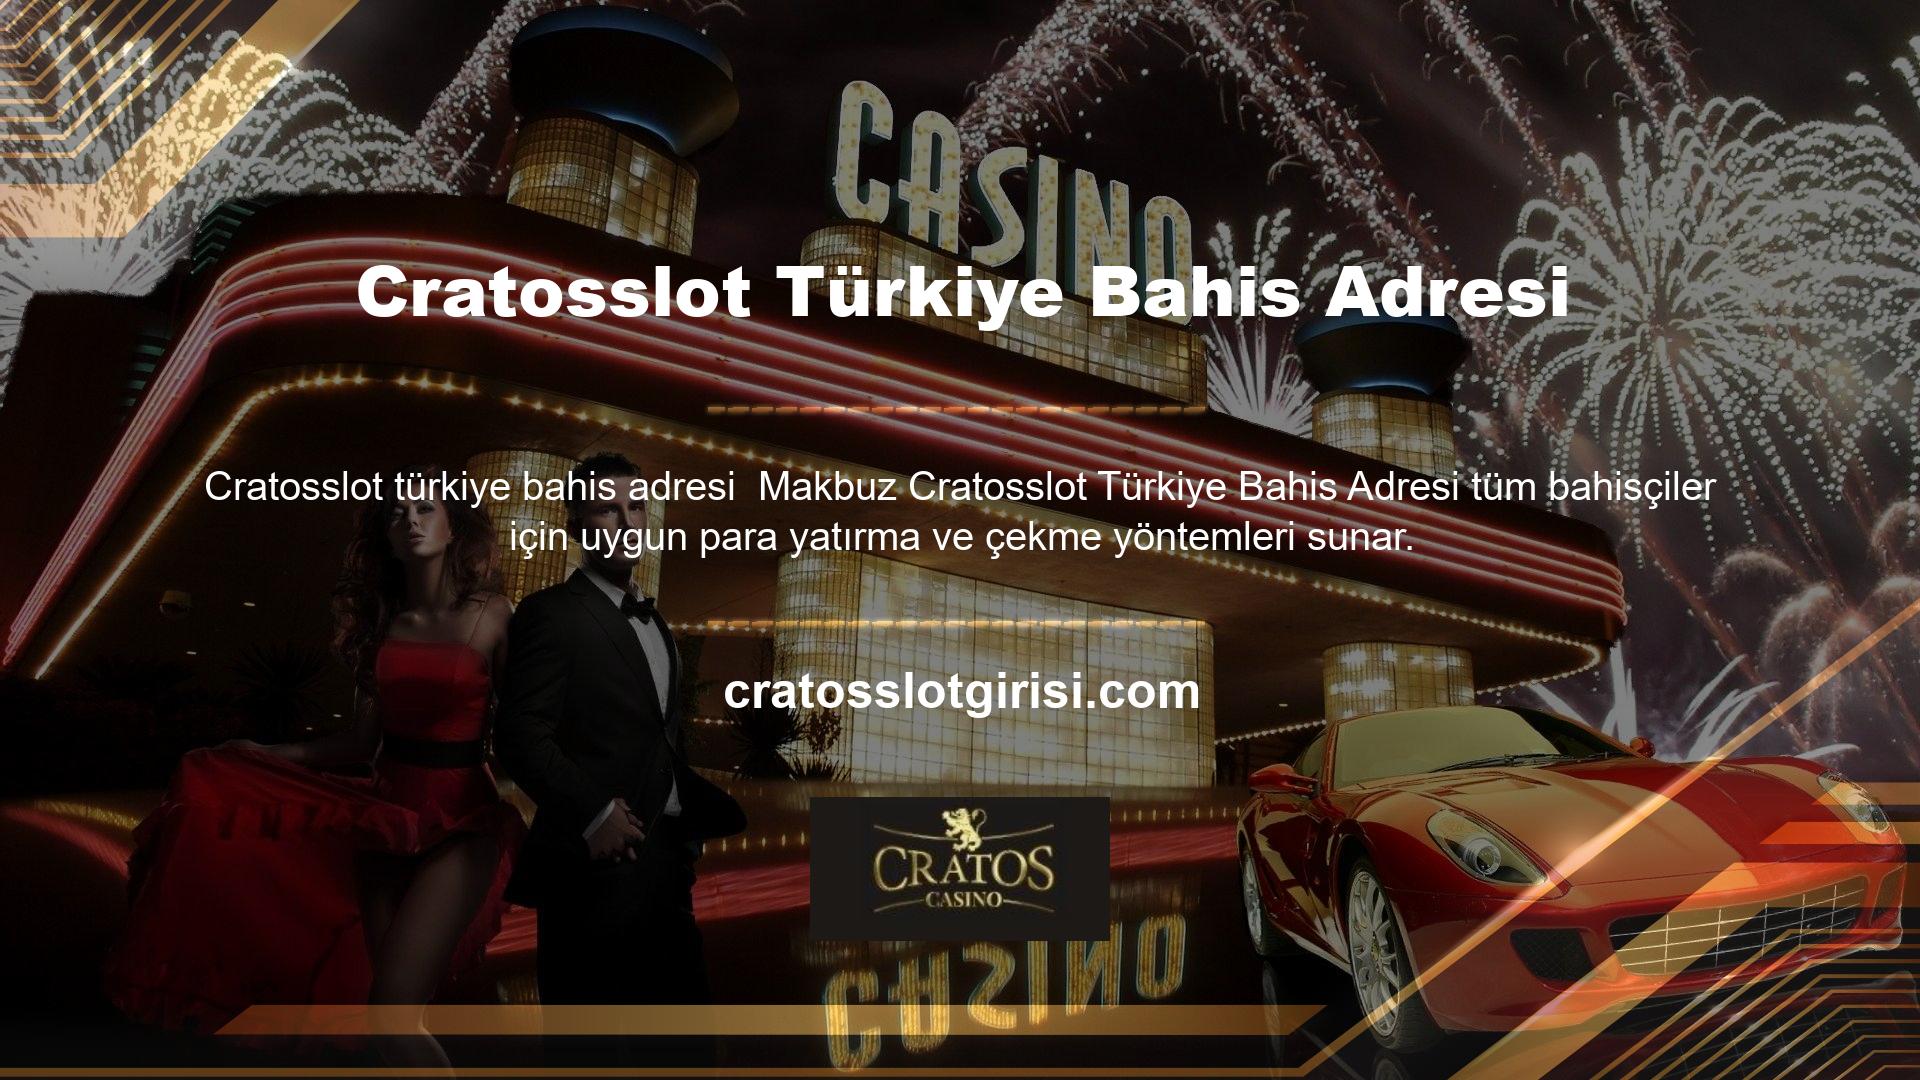 Türkiye'de de geçerli olan bu yöntemler sayesinde Cratosslot tutkunları kazandıklarını kolayca çekebilmektedir